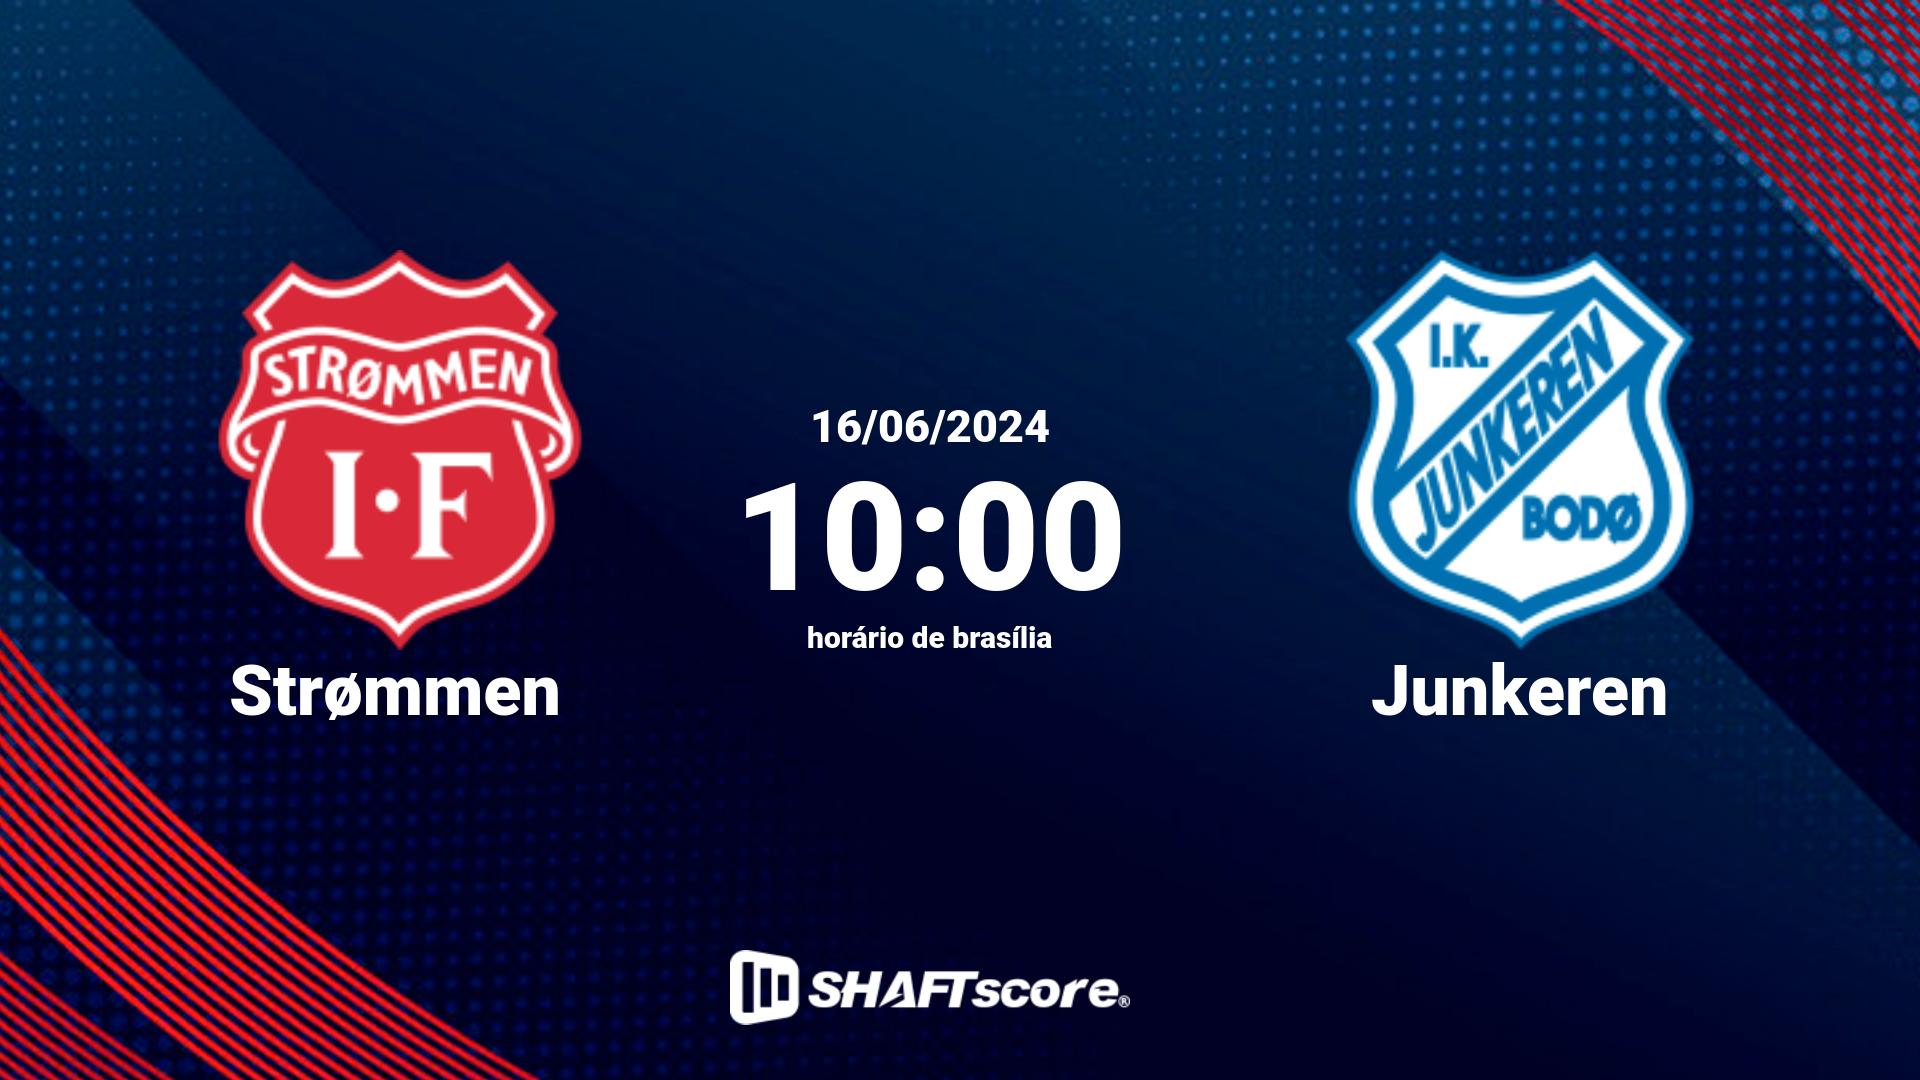 Estatísticas do jogo Strømmen vs Junkeren 16.06 10:00